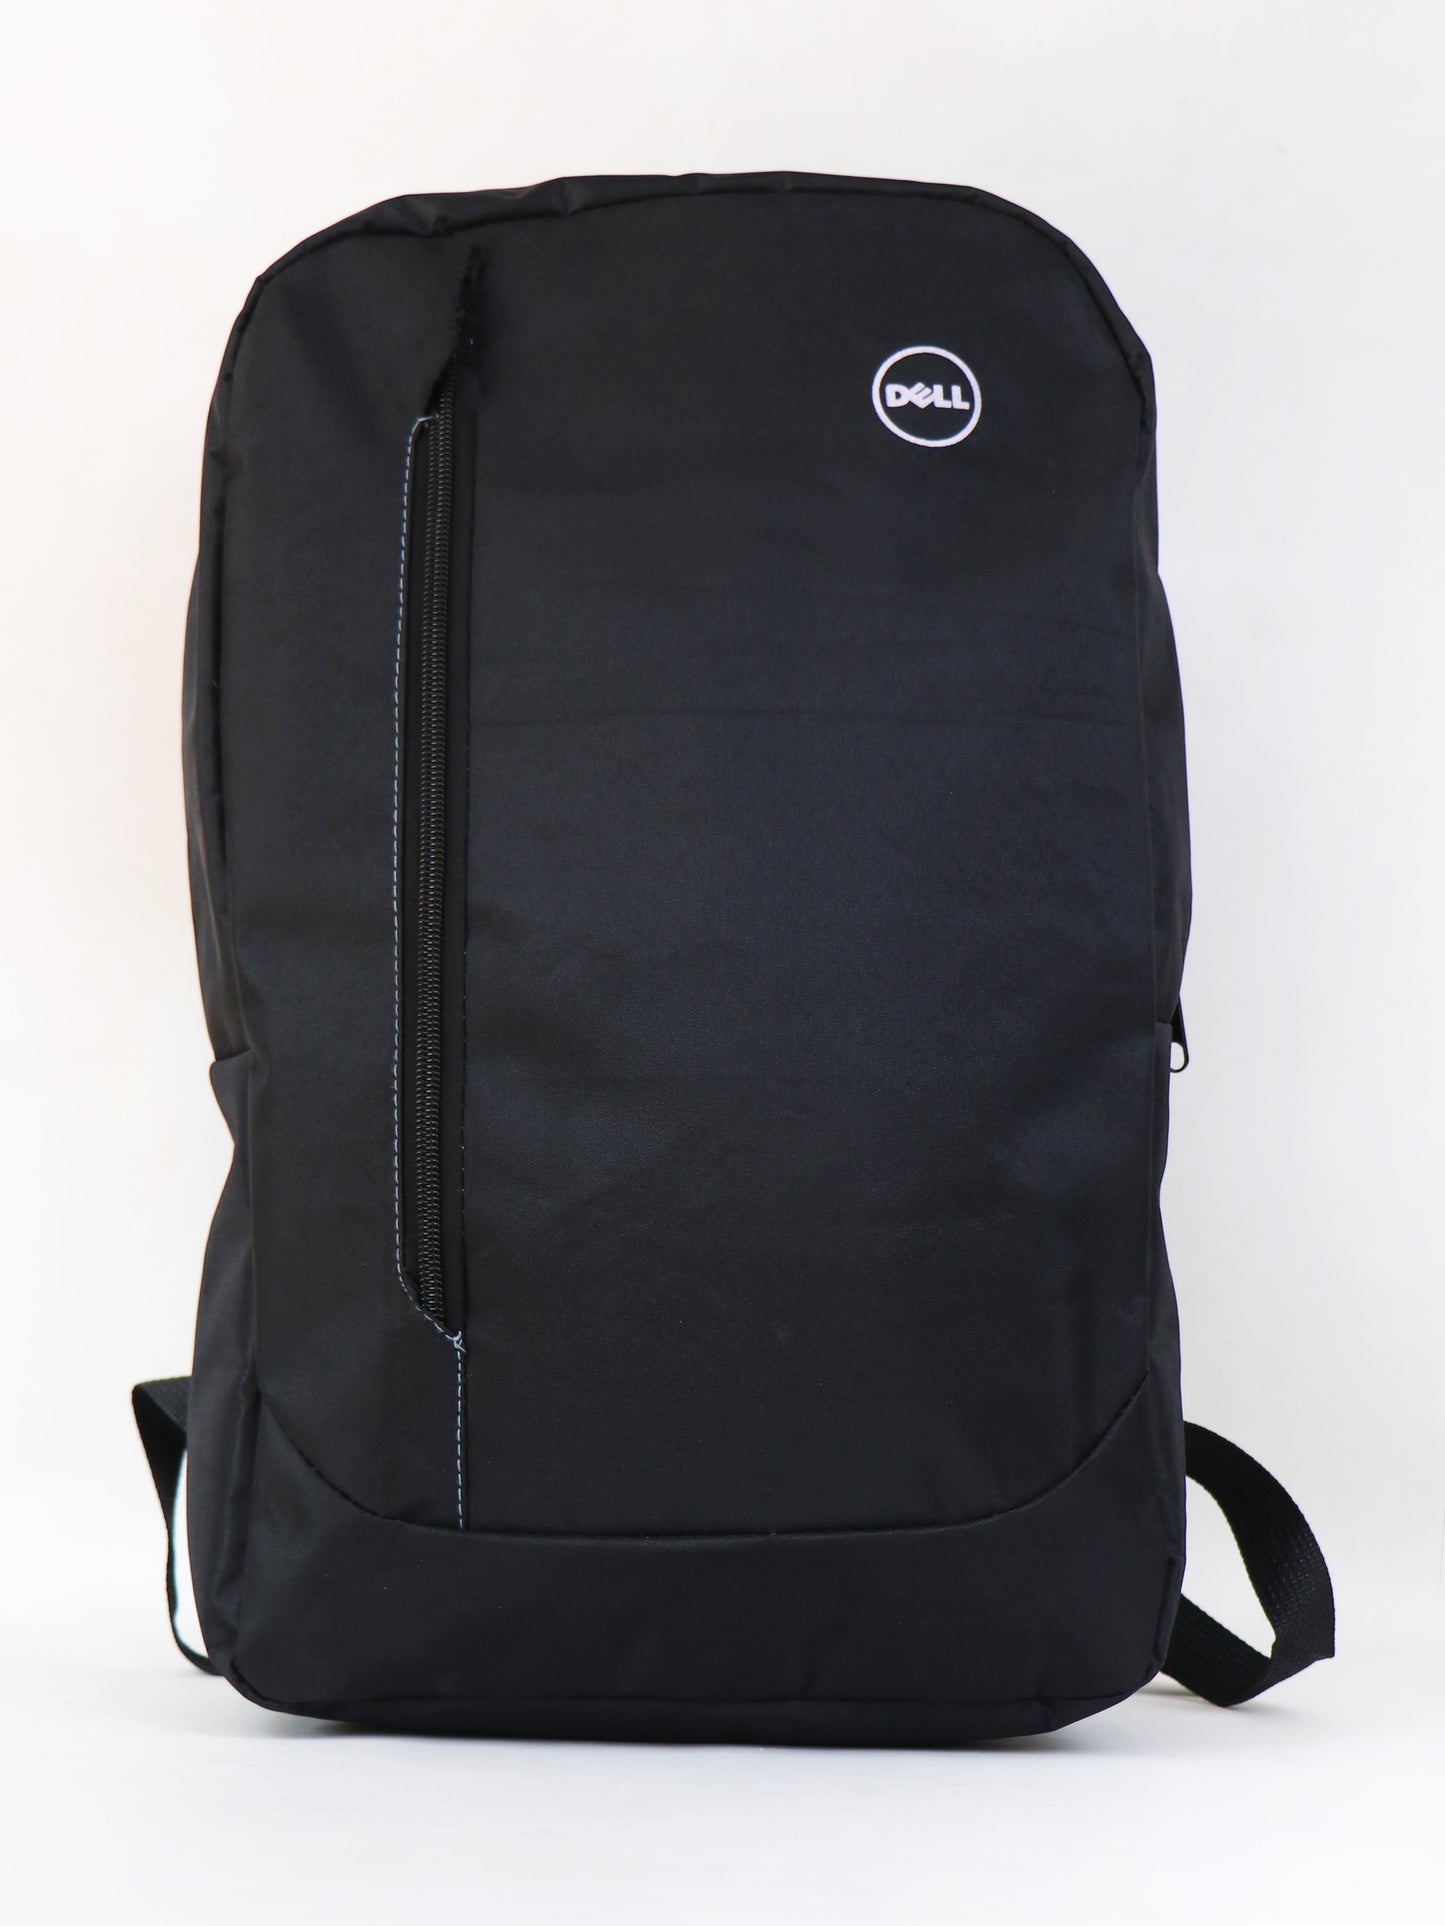 LB03 Dell Laptop Bag Value Backpack Black 01